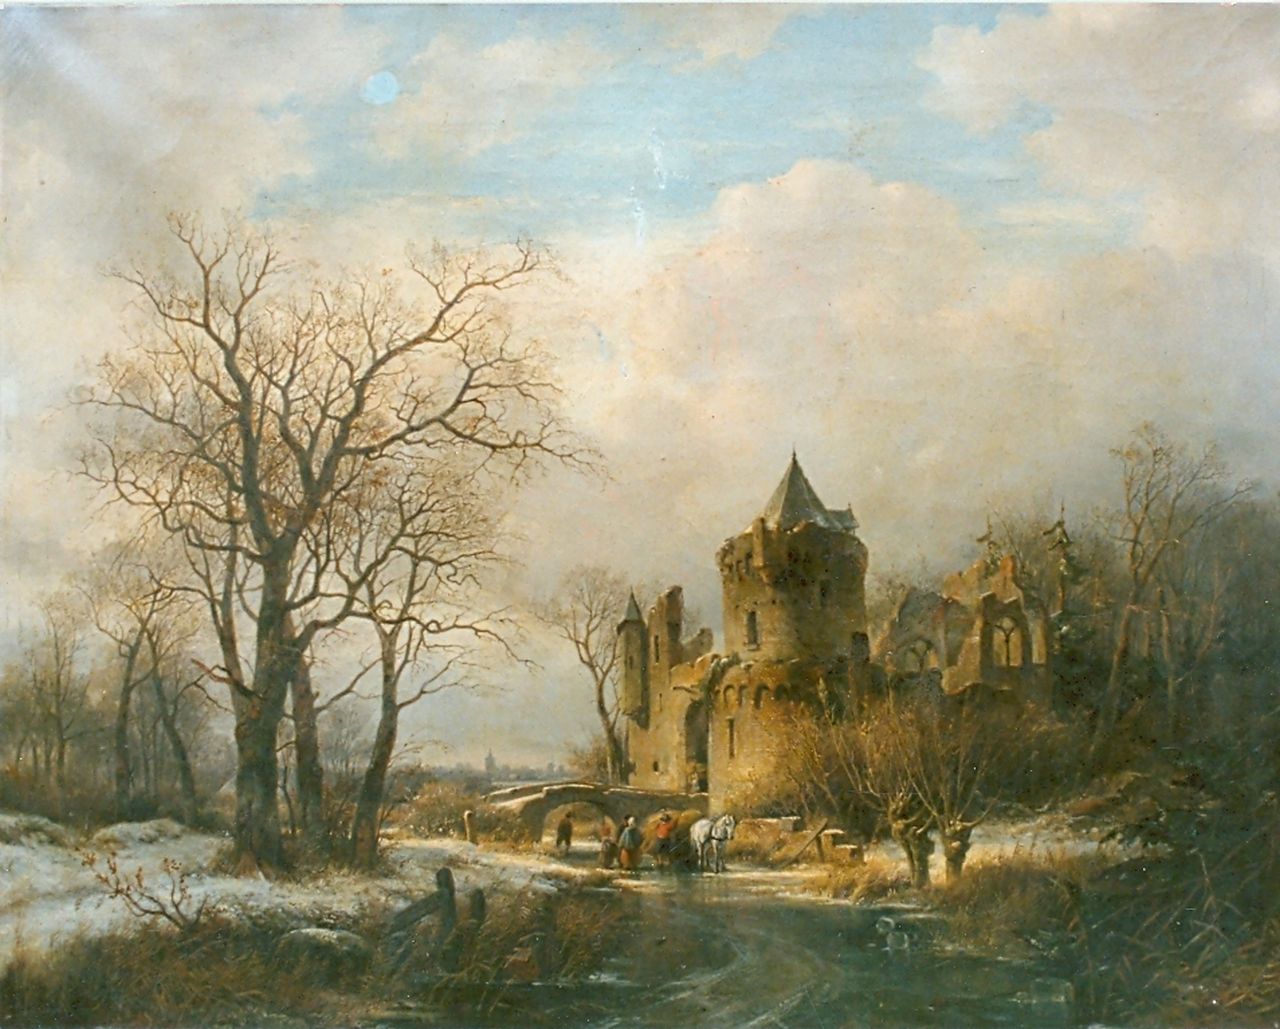 Ravenswaay J. van | Jan van Ravenswaay, Winter landscape, Öl auf Leinwand 76,6 x 100,2 cm, signed l.c. und dated 1848